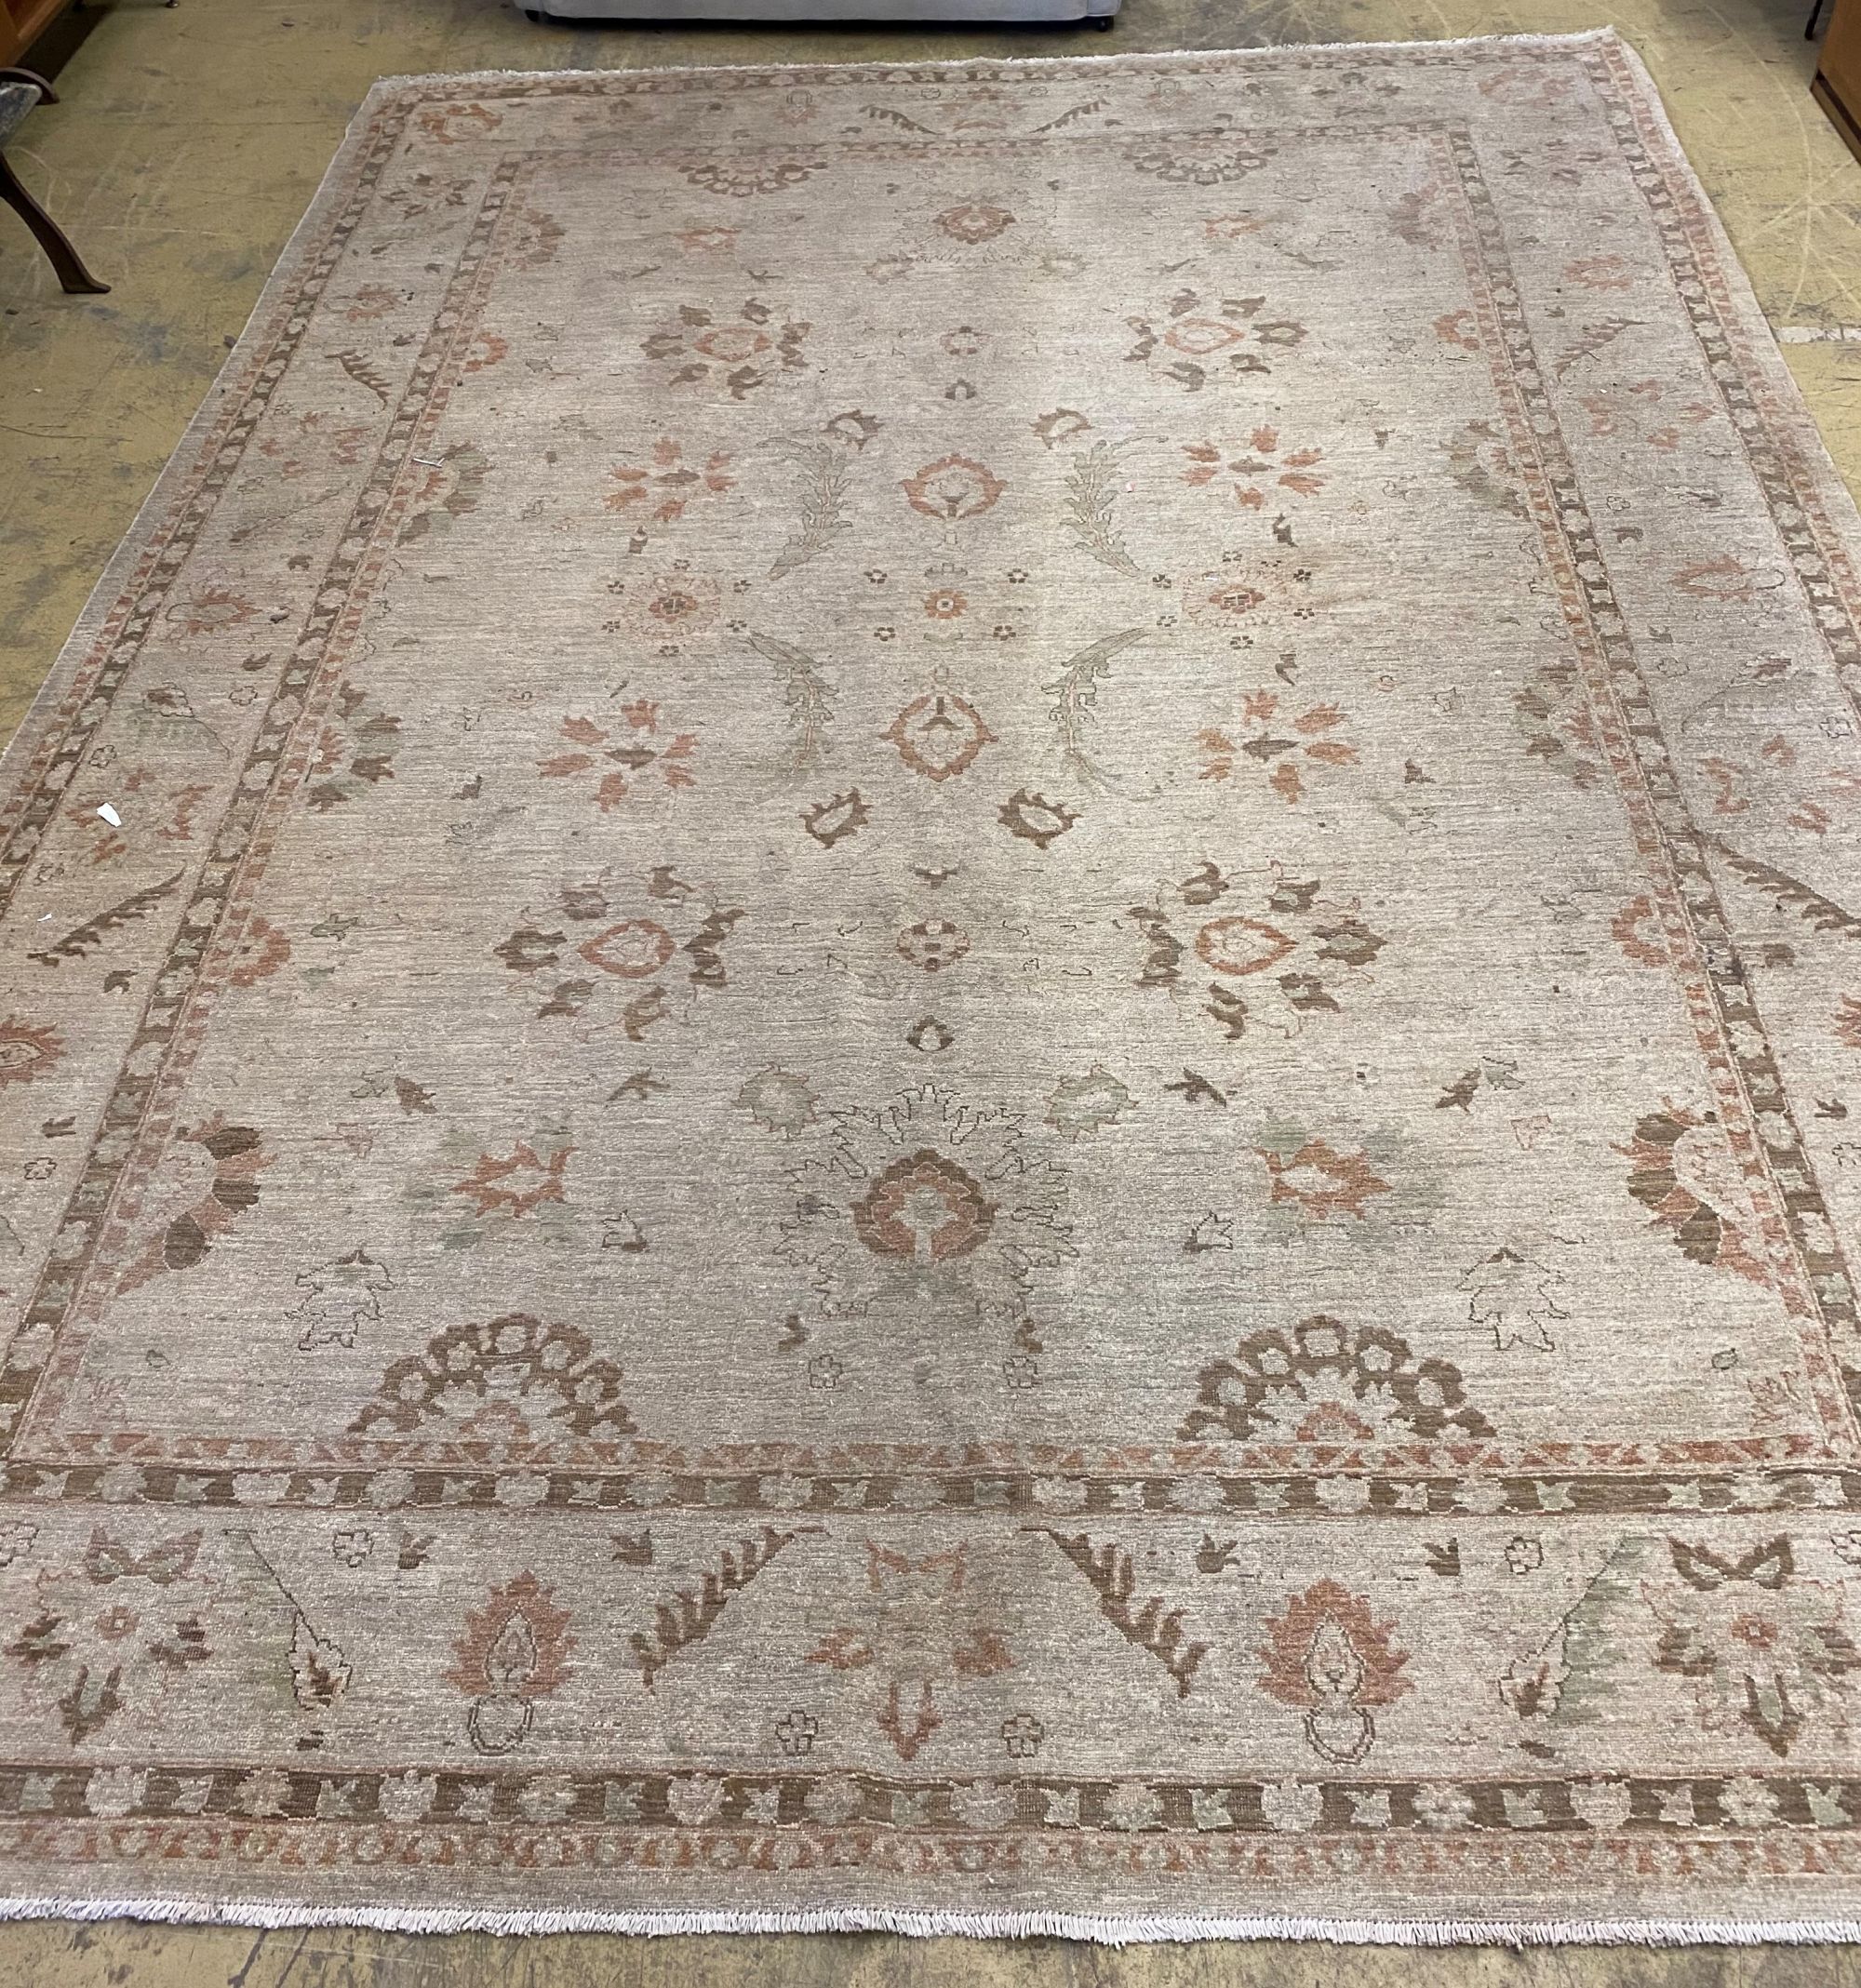 A Zeigler style carpet, 370 x 265cm